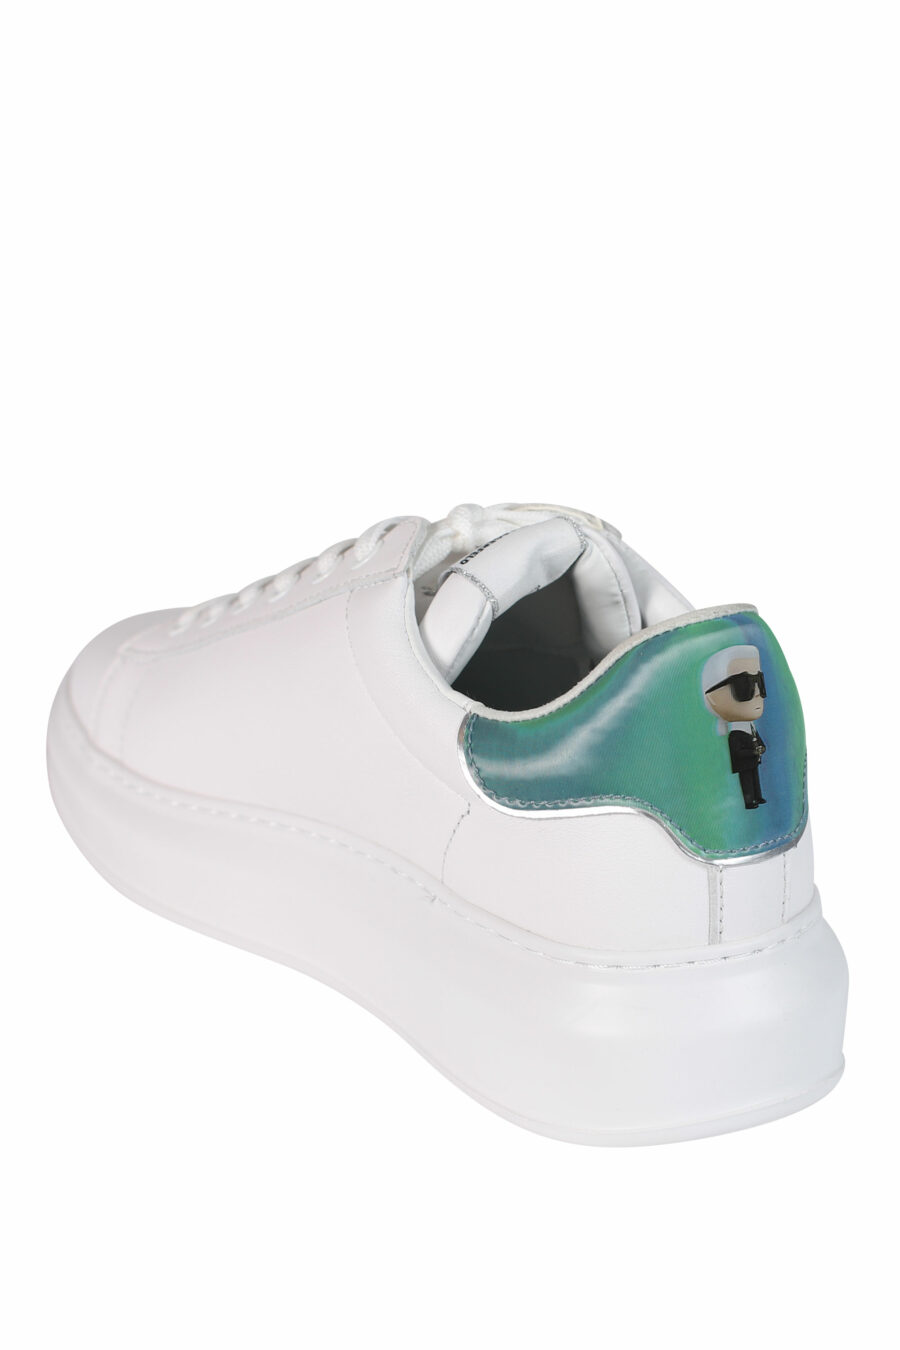 Zapatillas blancas "kapri" con detalles holográfico y minilogo en metal - 5059529251542 4